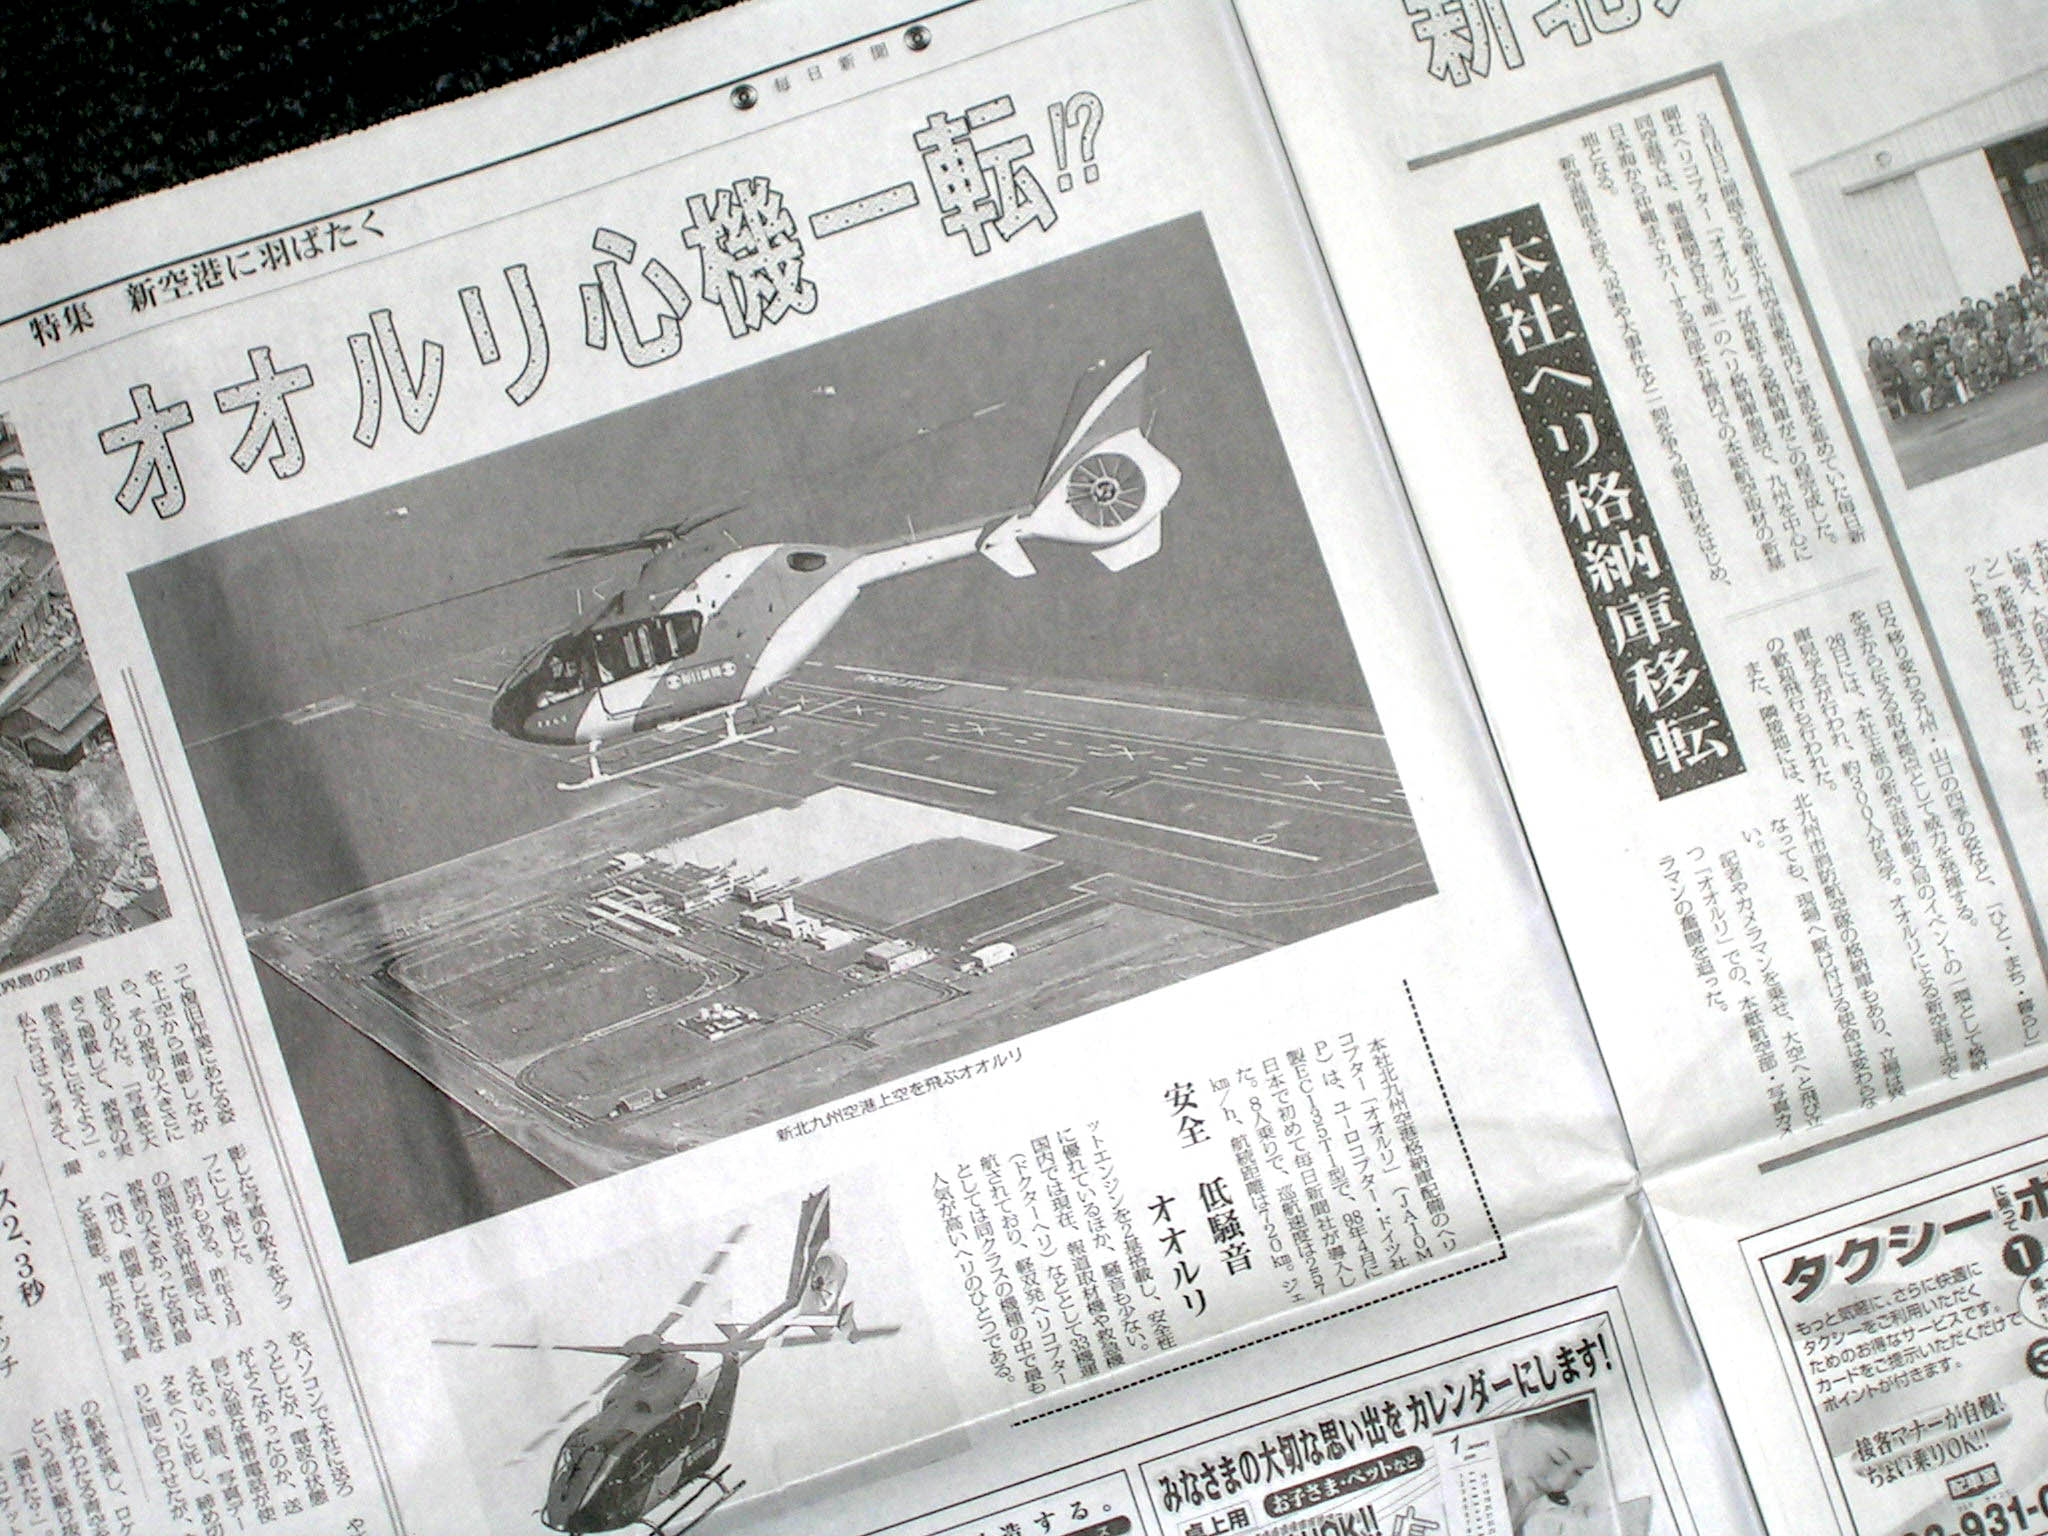 毎日新聞ヘリ Ja10mp新北九州空港新格納庫へ ほーどー飛行機 Aerial News Gathering